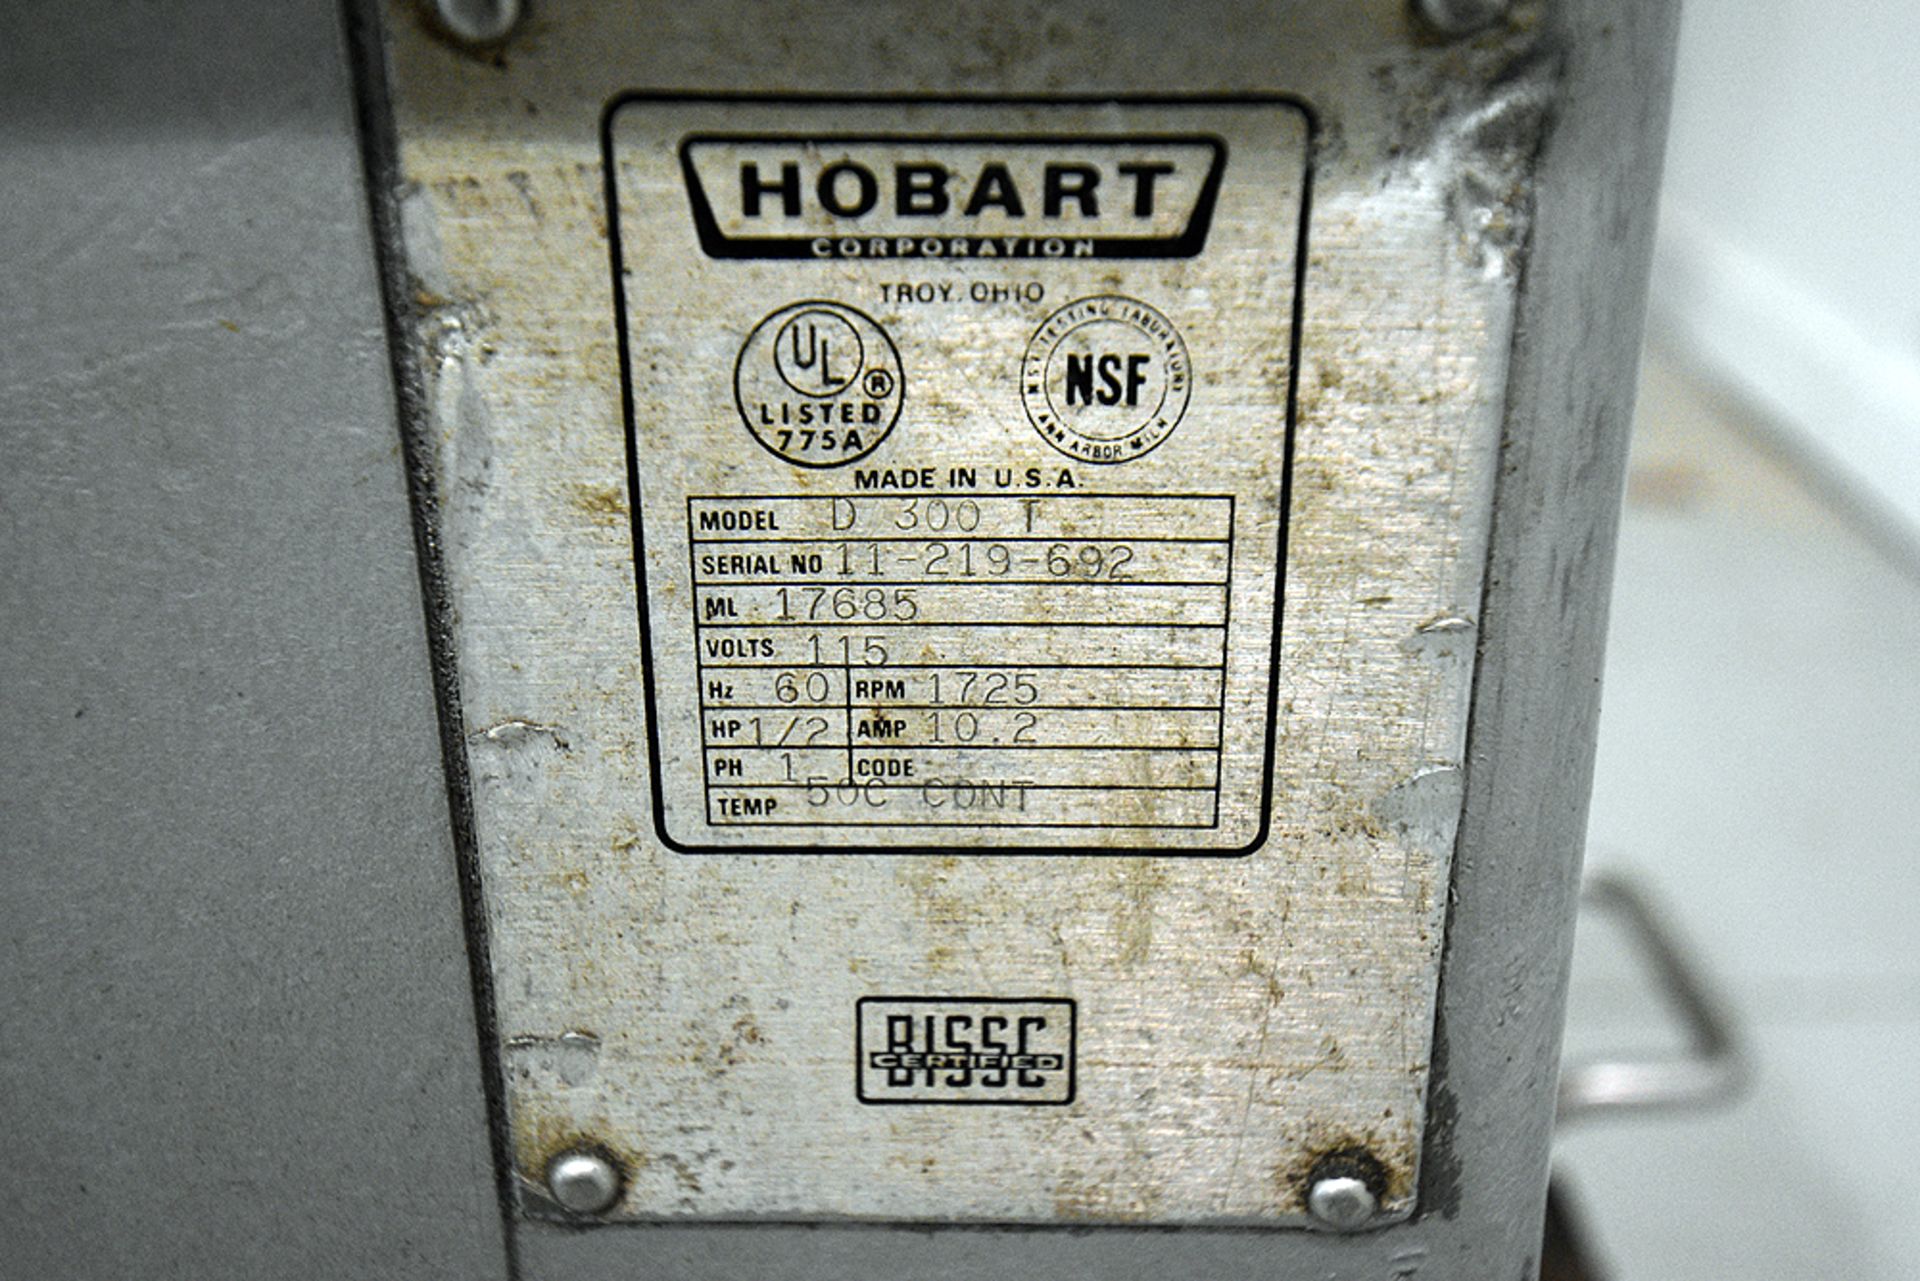 Hobart Model D300T Mixer w/Attachments - Image 4 of 6